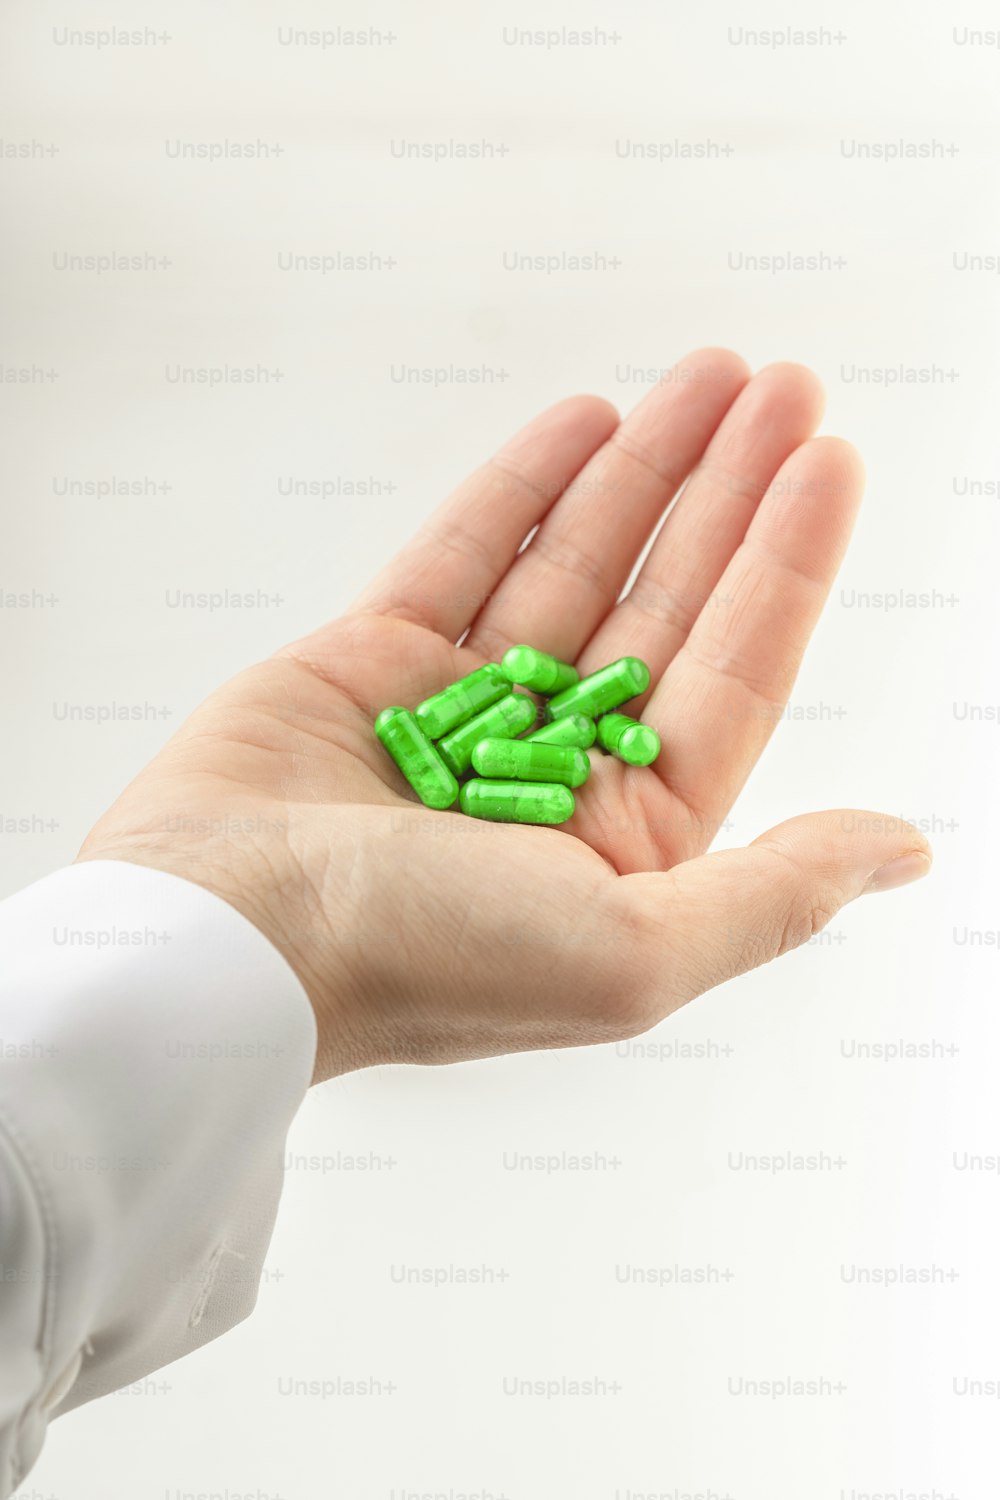 una mano che tiene una manciata di pillole verdi